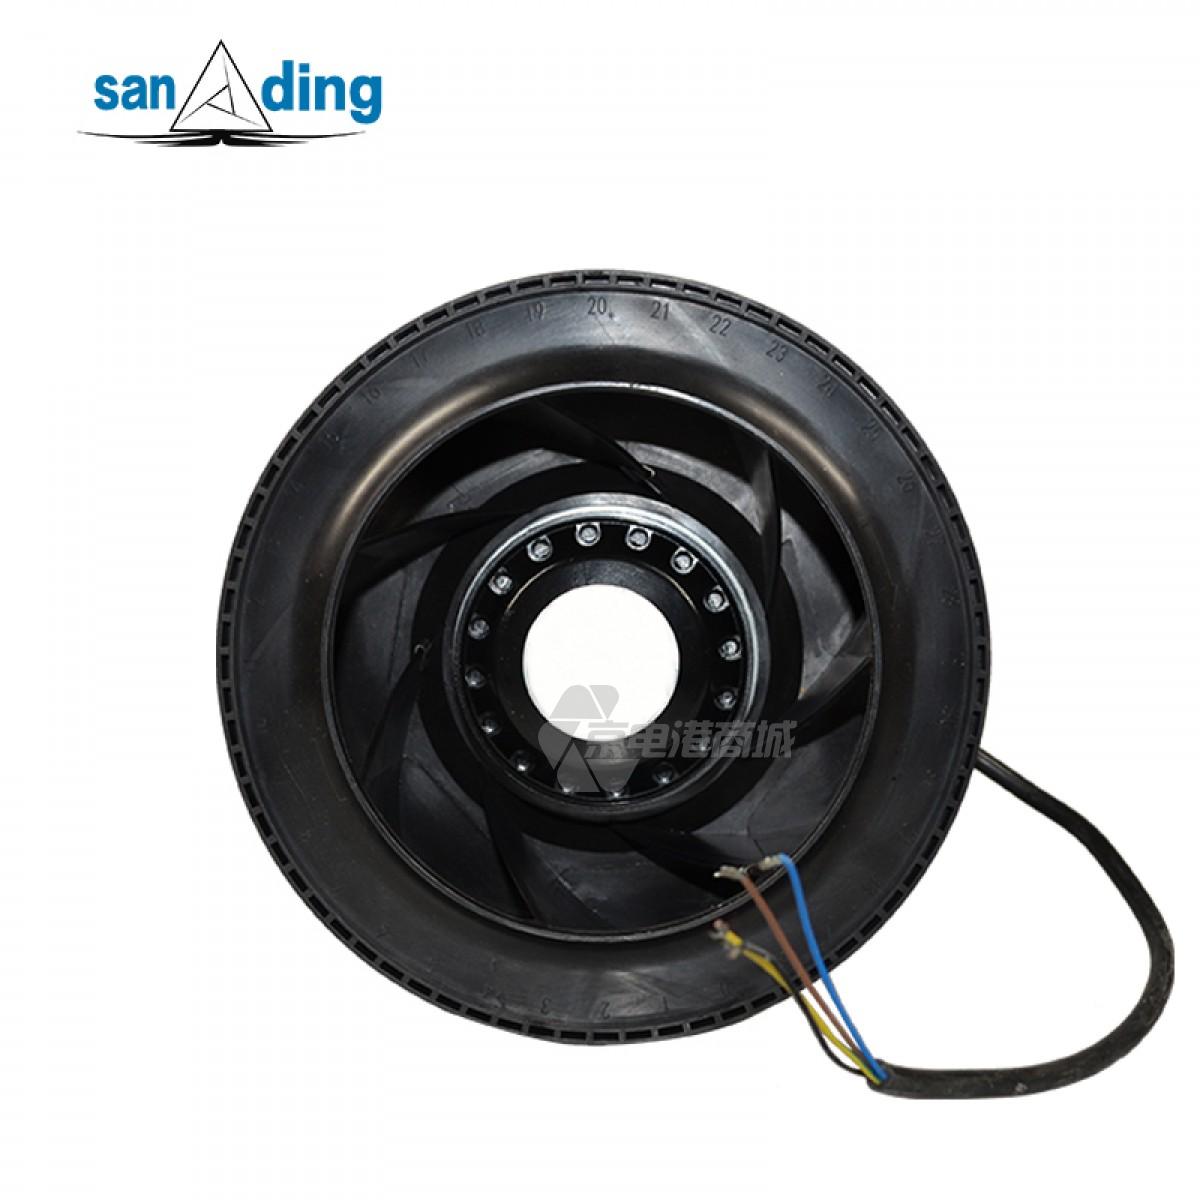 sanding R22592N-12W-B21 115VDC 1.7A 180W φ225mm 3050rpm 4-wire Centrifugal fan